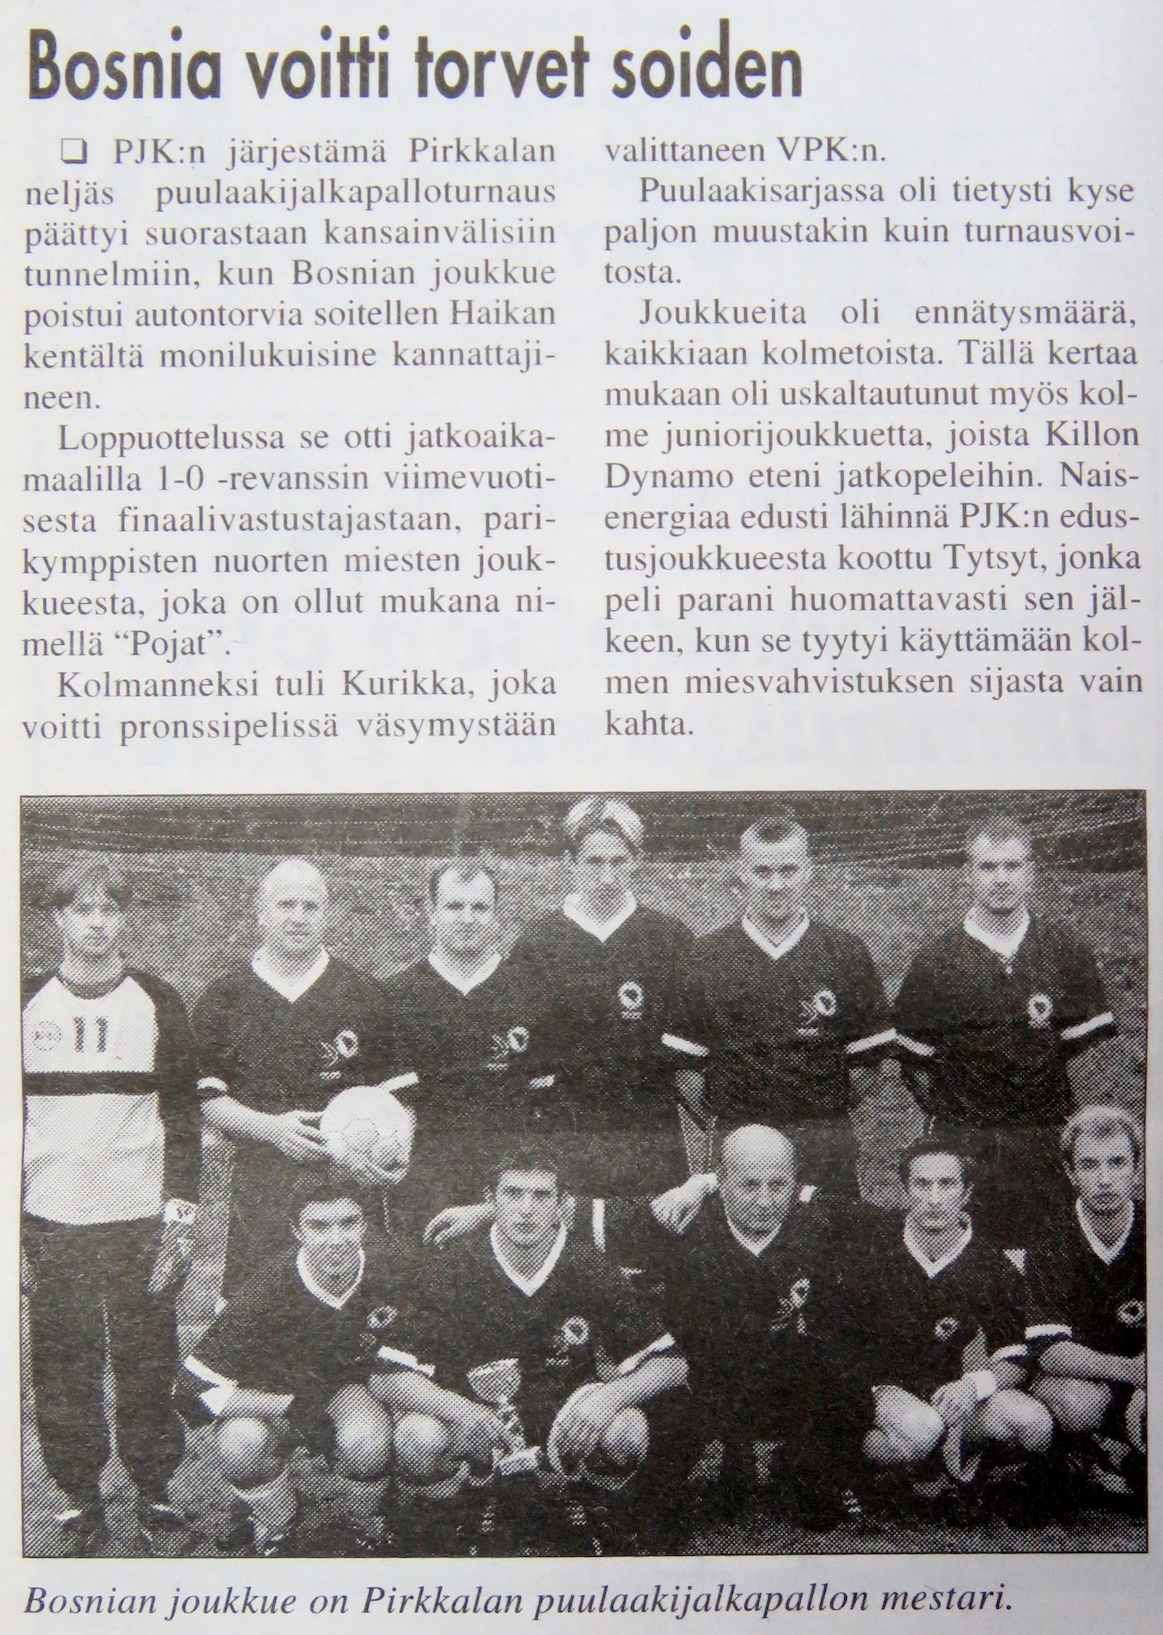 Turnausraportti Pirkkalaisessa 24.09. 2003